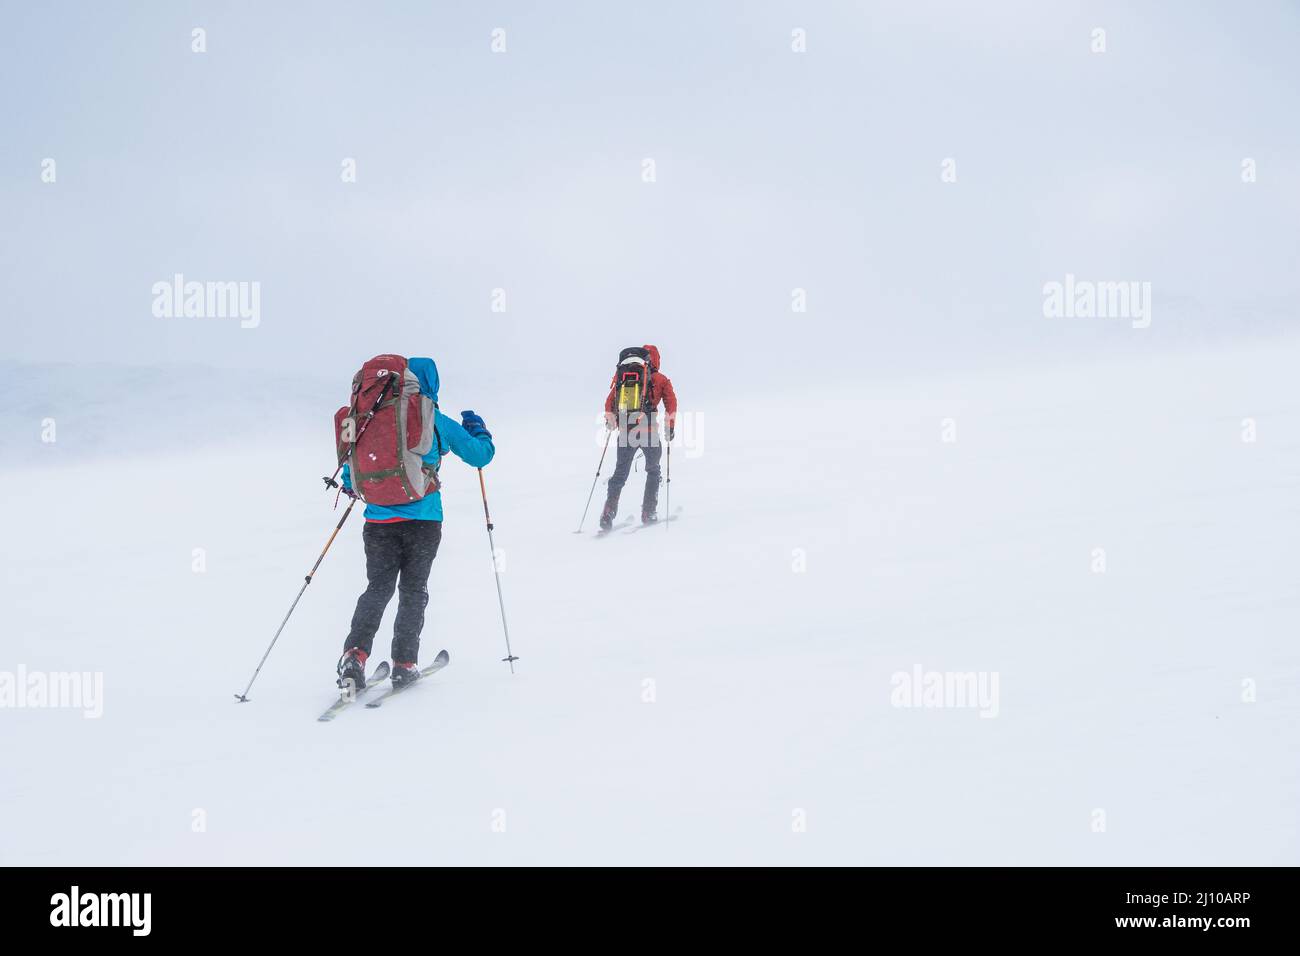 Deux skieurs dans des conditions difficiles ski de randonnée dans les montagnes de Norvège Banque D'Images